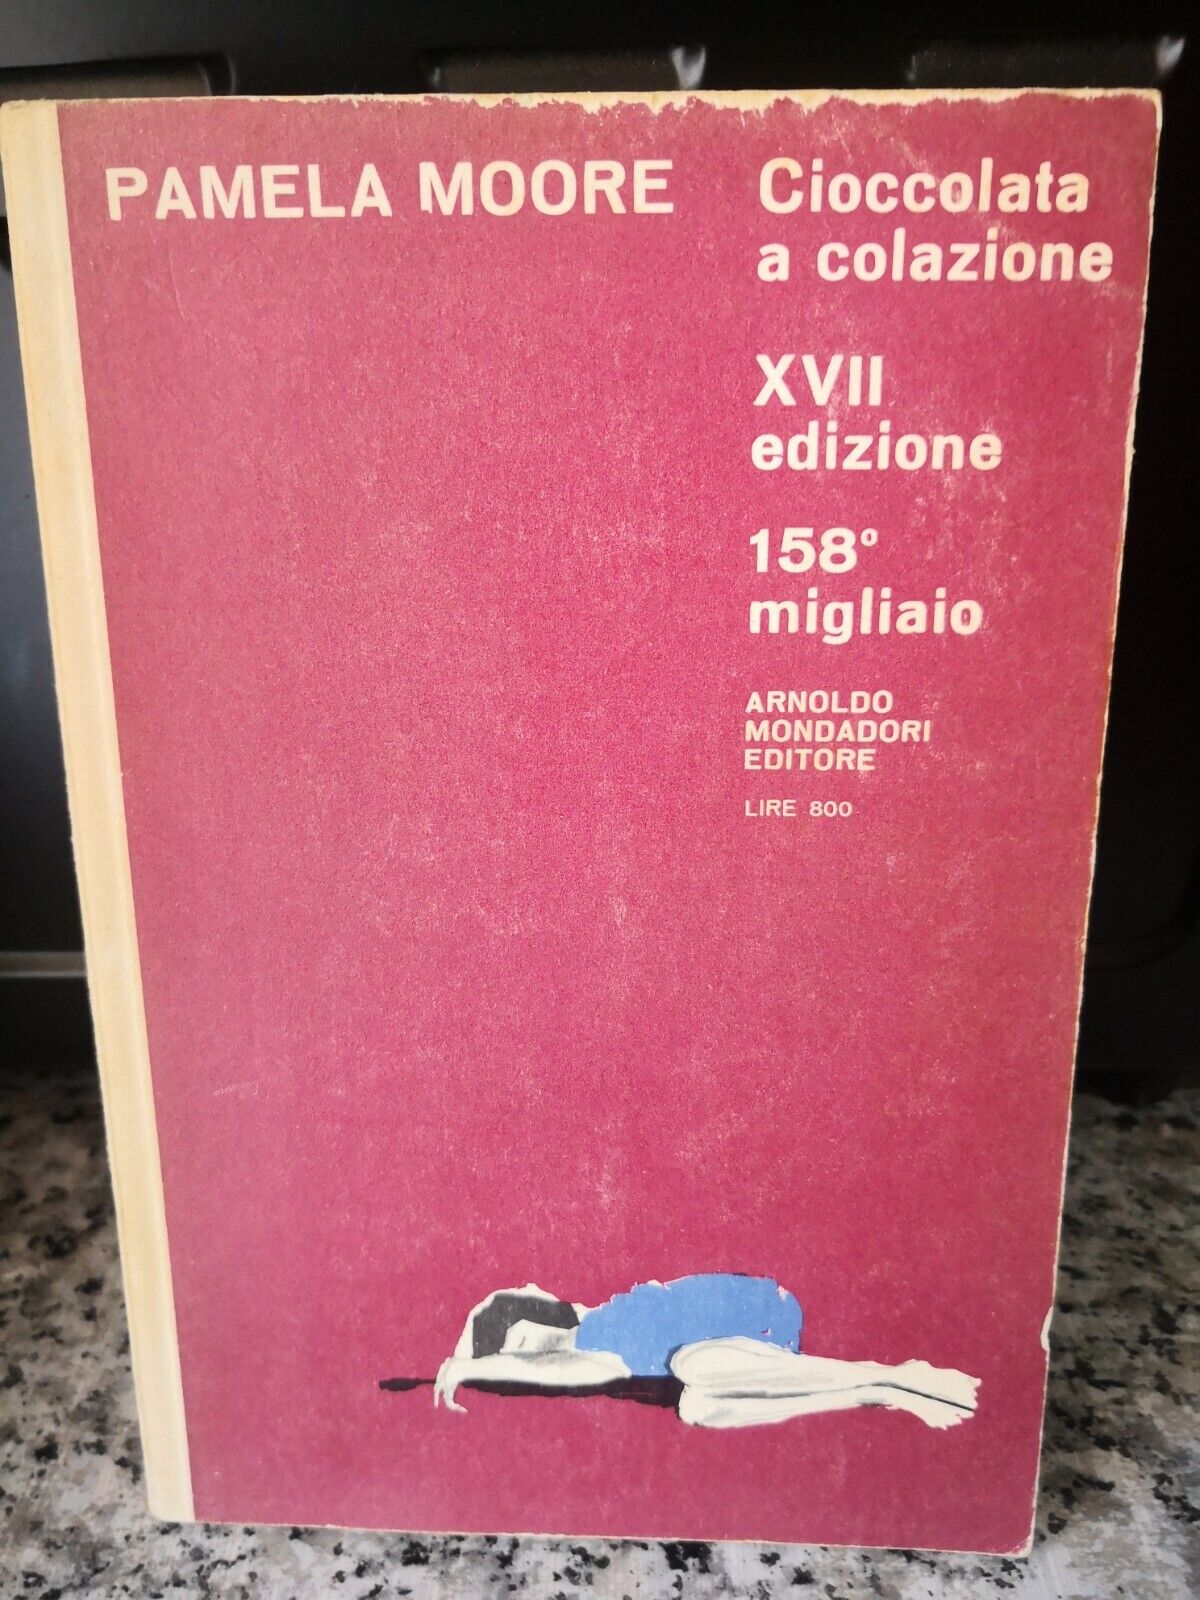 Cioccolata a colazione XVII edizione 158? migliaio  di Pamela Moore,  1957, -F